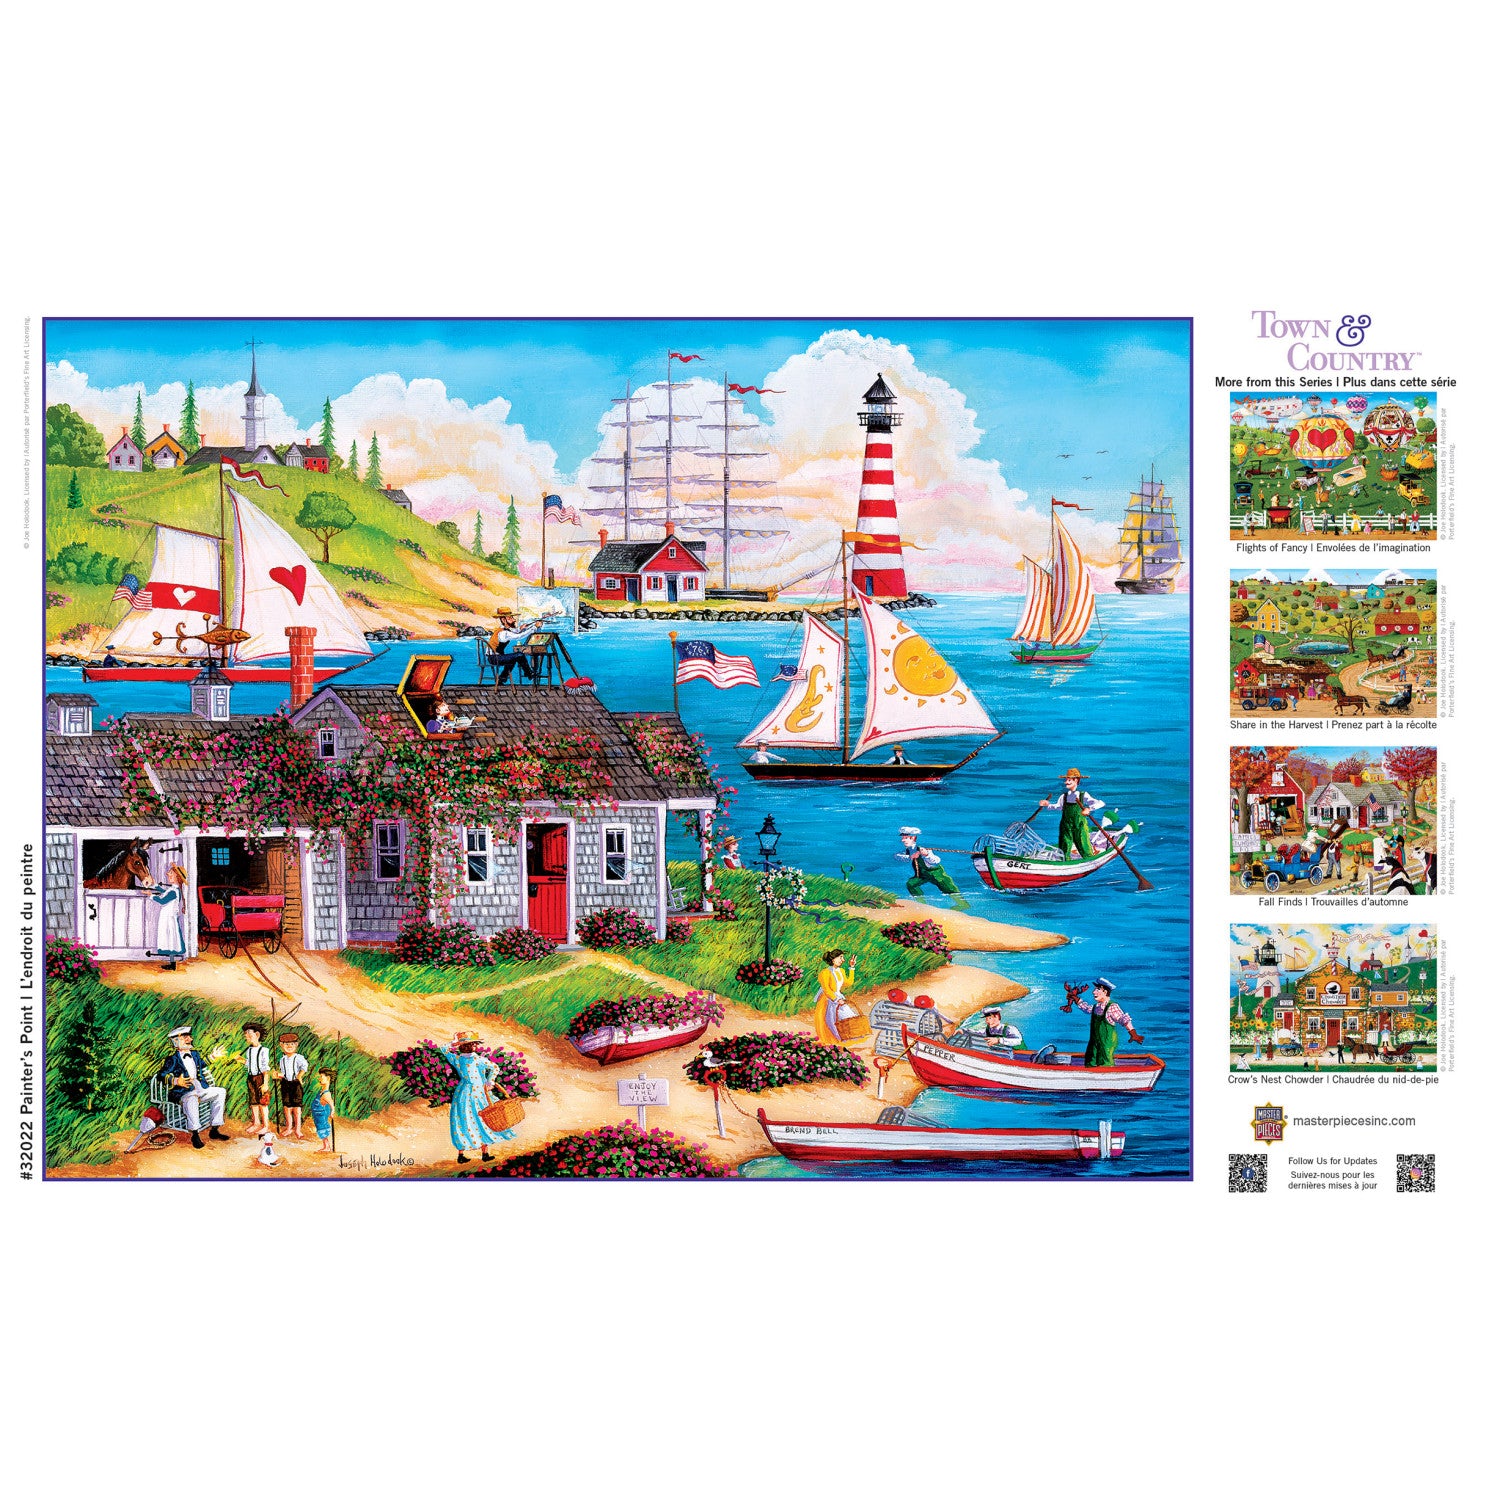 Town & Country - Painter's Point 300 Piece EZ Grip Puzzle